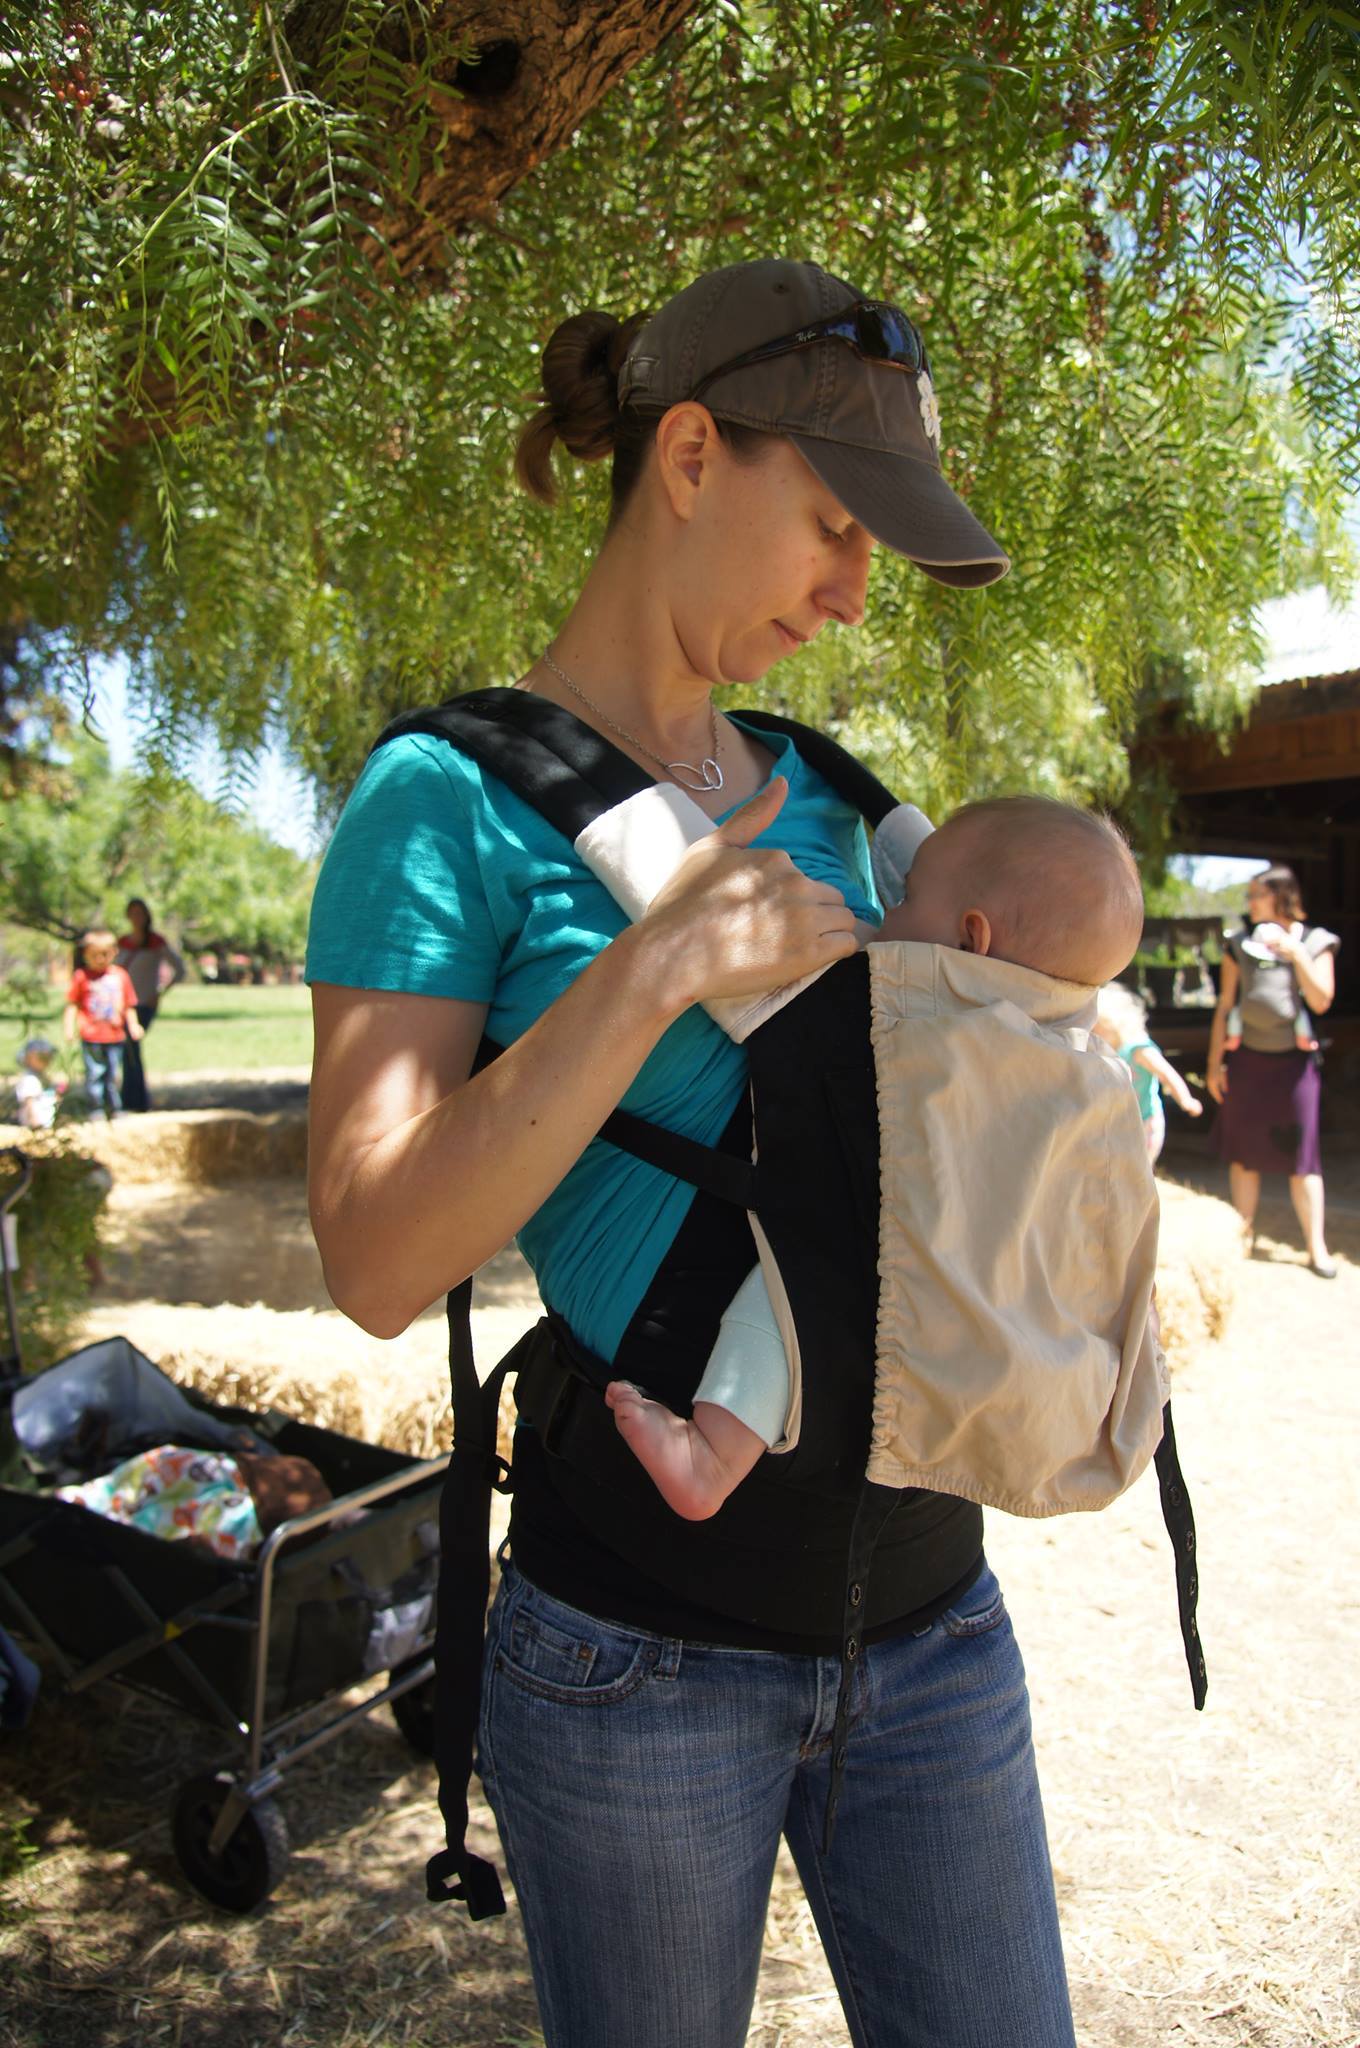 breastfeeding newborn in ergo baby carrier